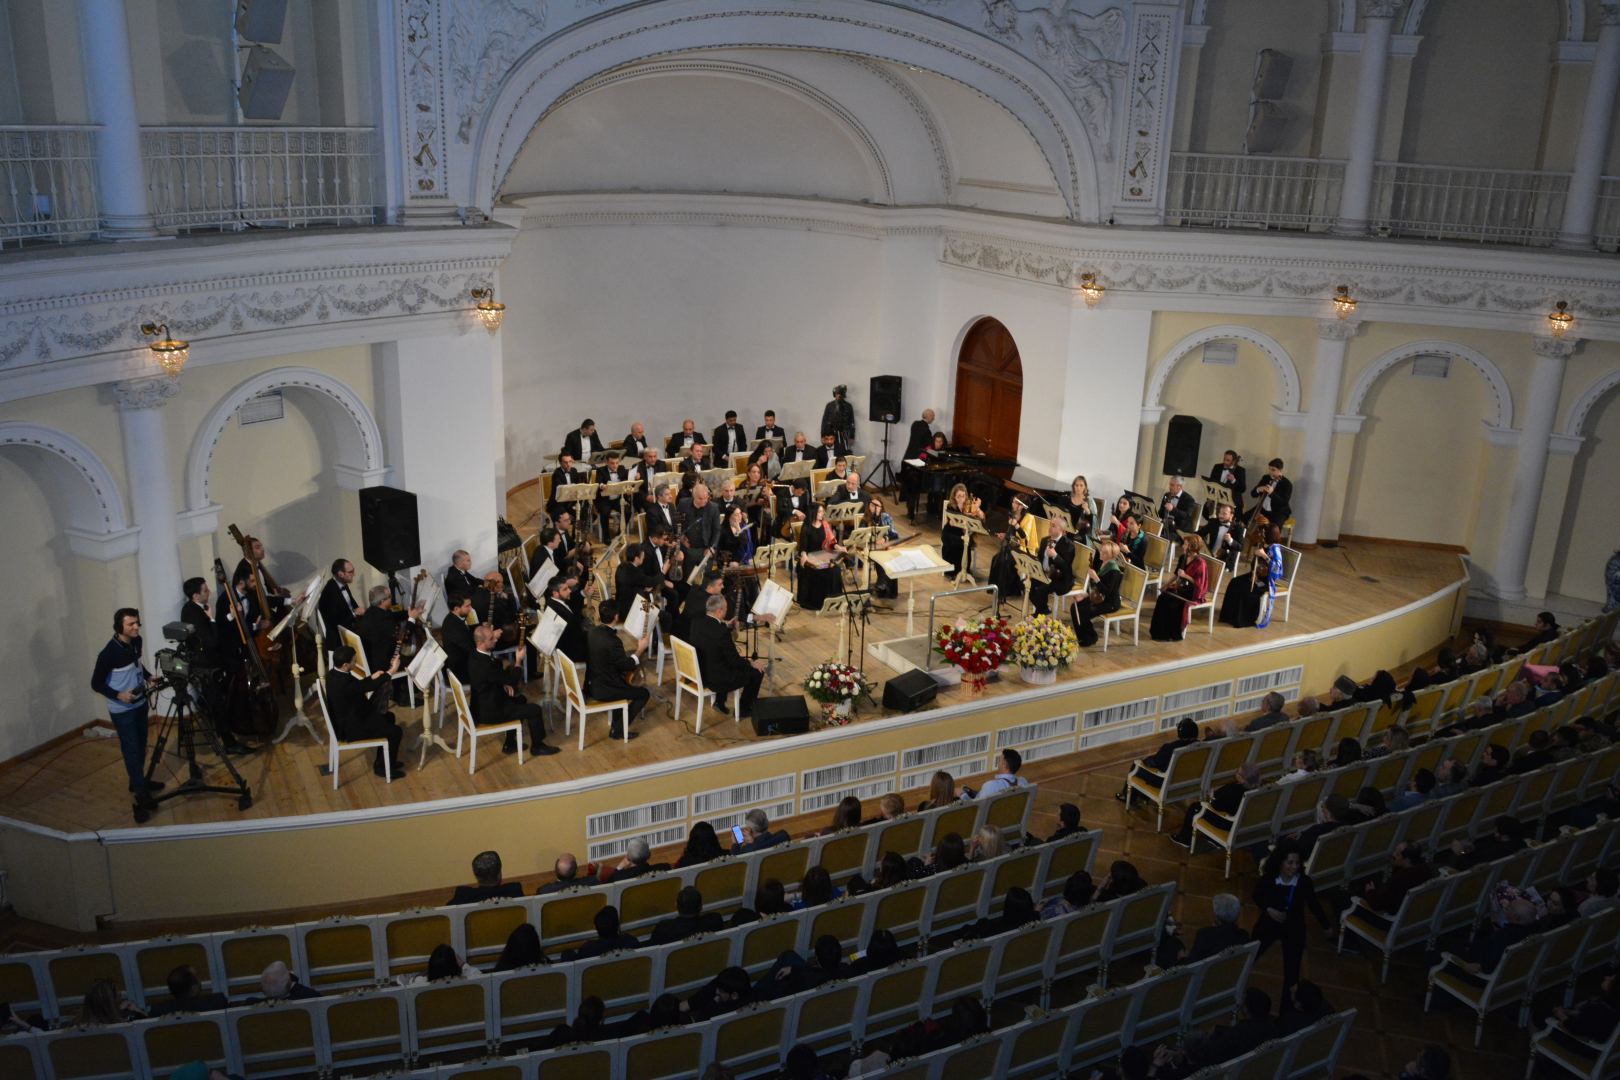 Красота и ритмичность – концерт Кенуль Мамедли в Баку (ФОТО)